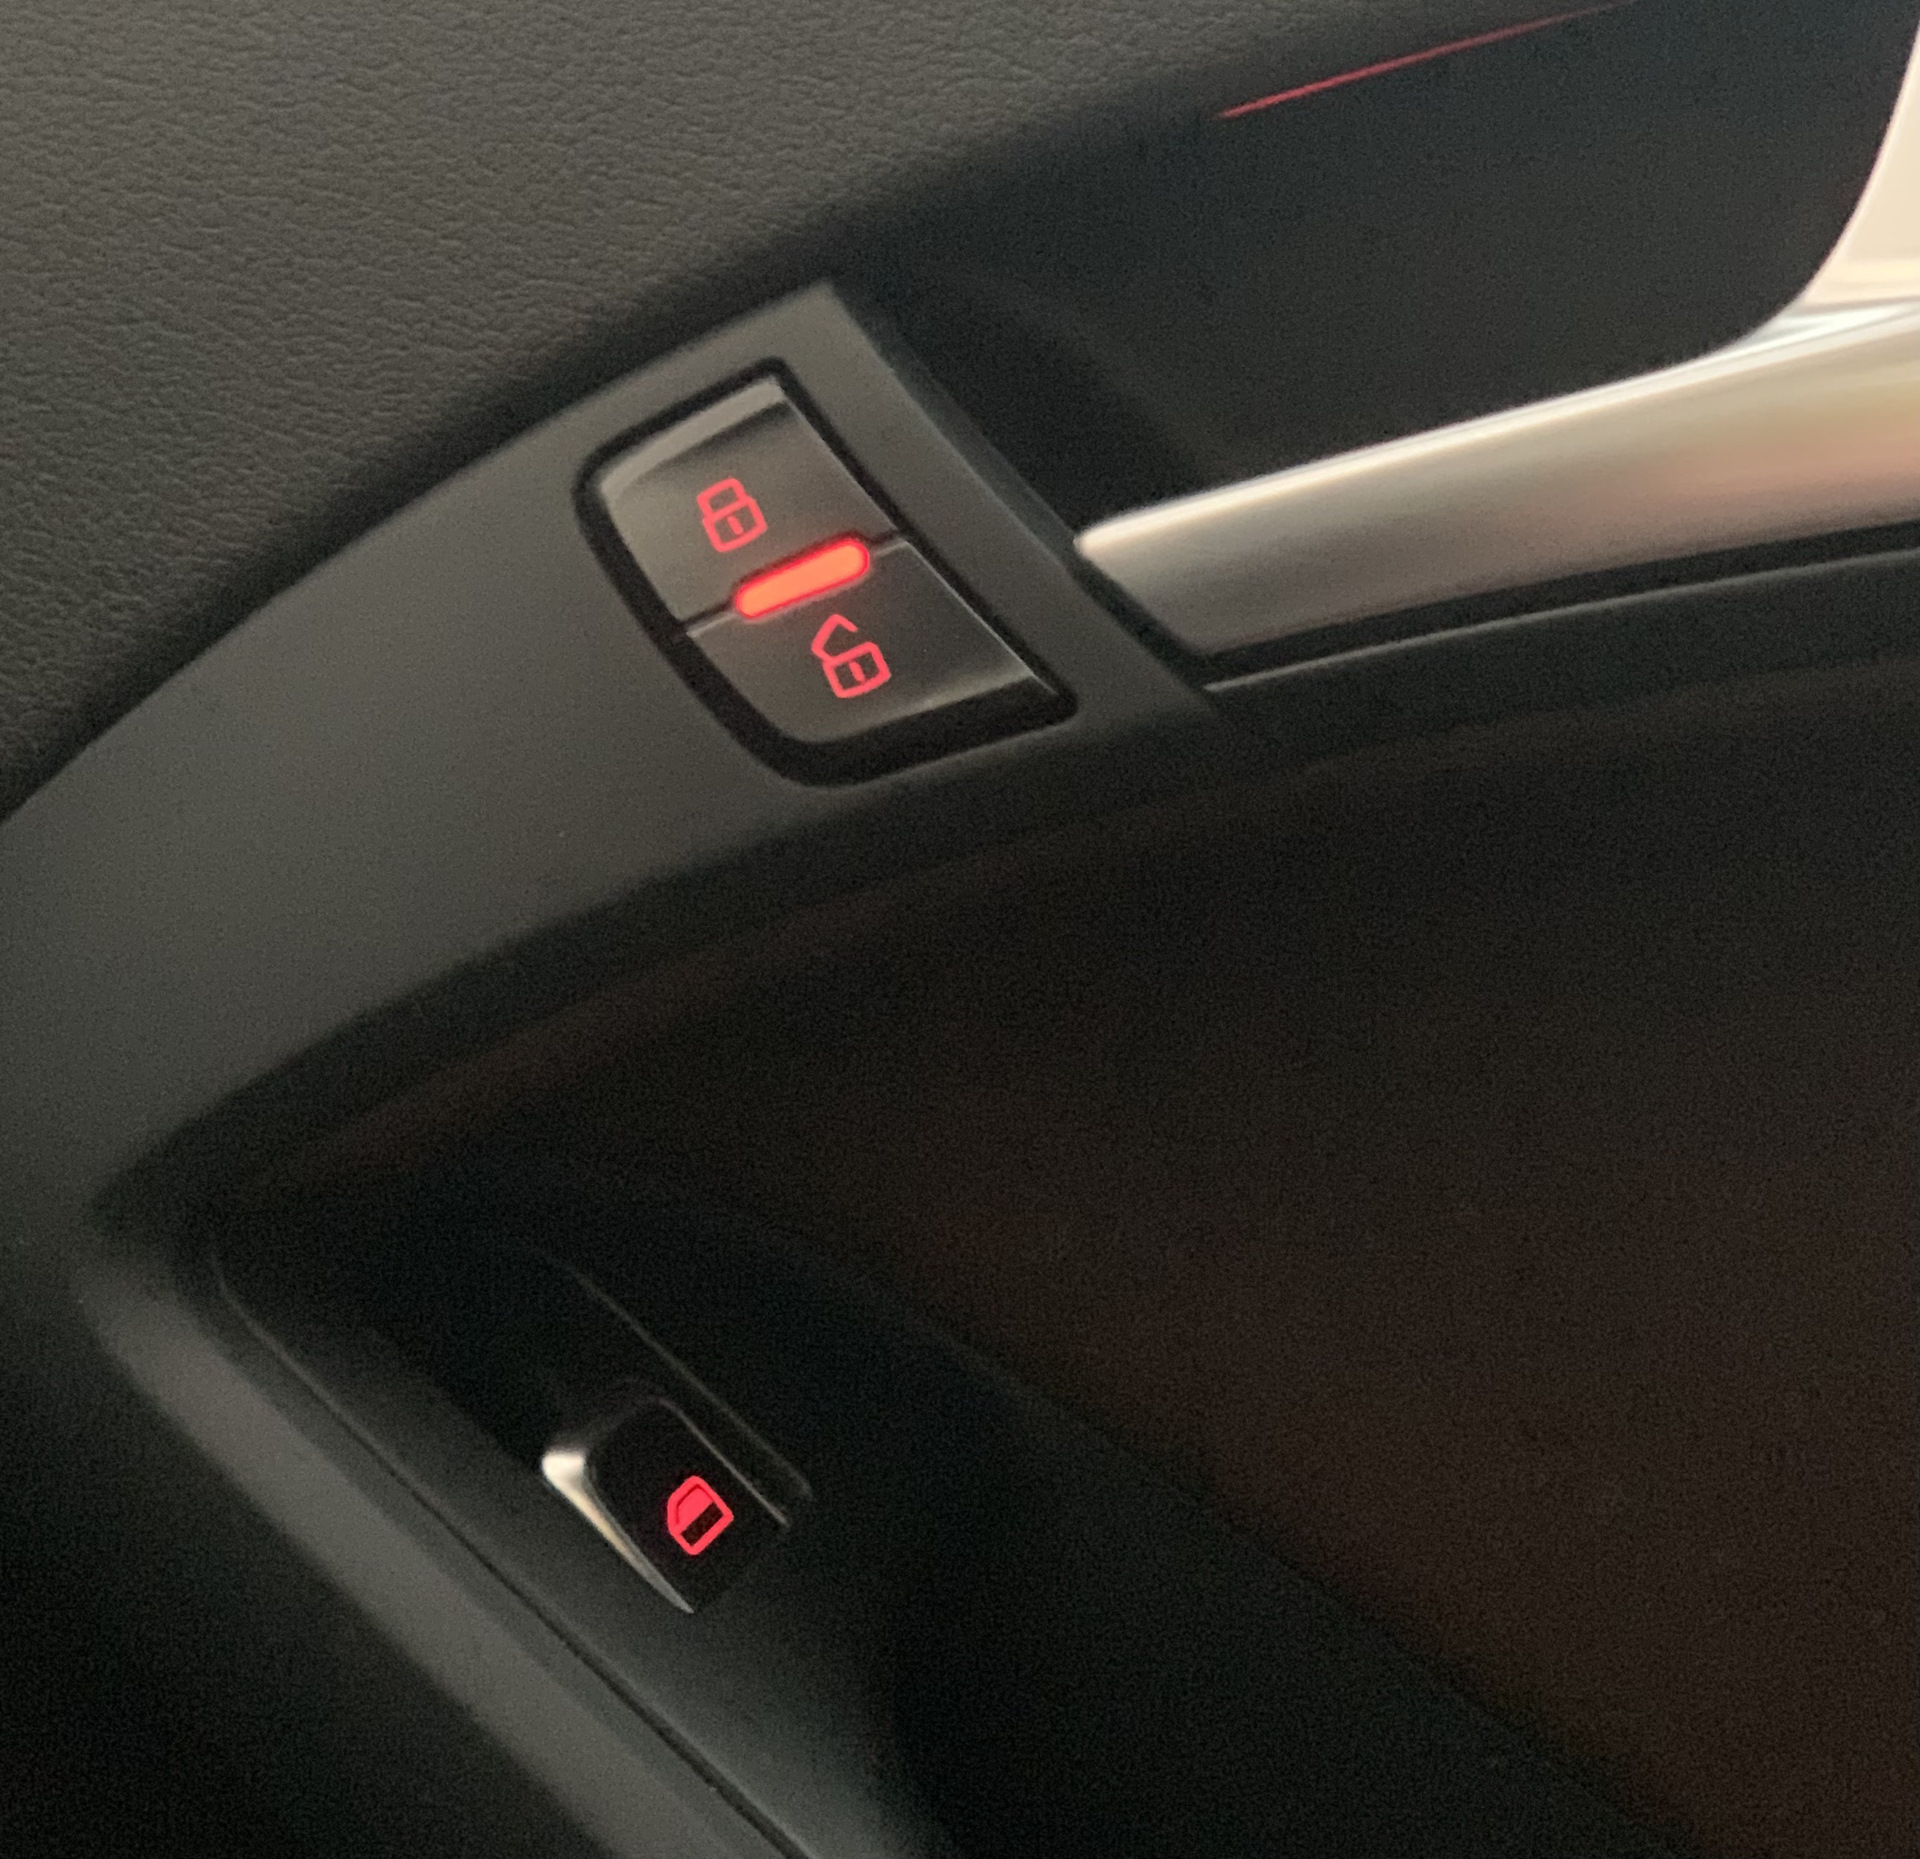 Кнопки управления электро сидением Ауди. Jaecoo j 7 память сидений. Установка памяти сидений Audi a5 8t. Кнопка память сидений Ауди а6 с7 фото.